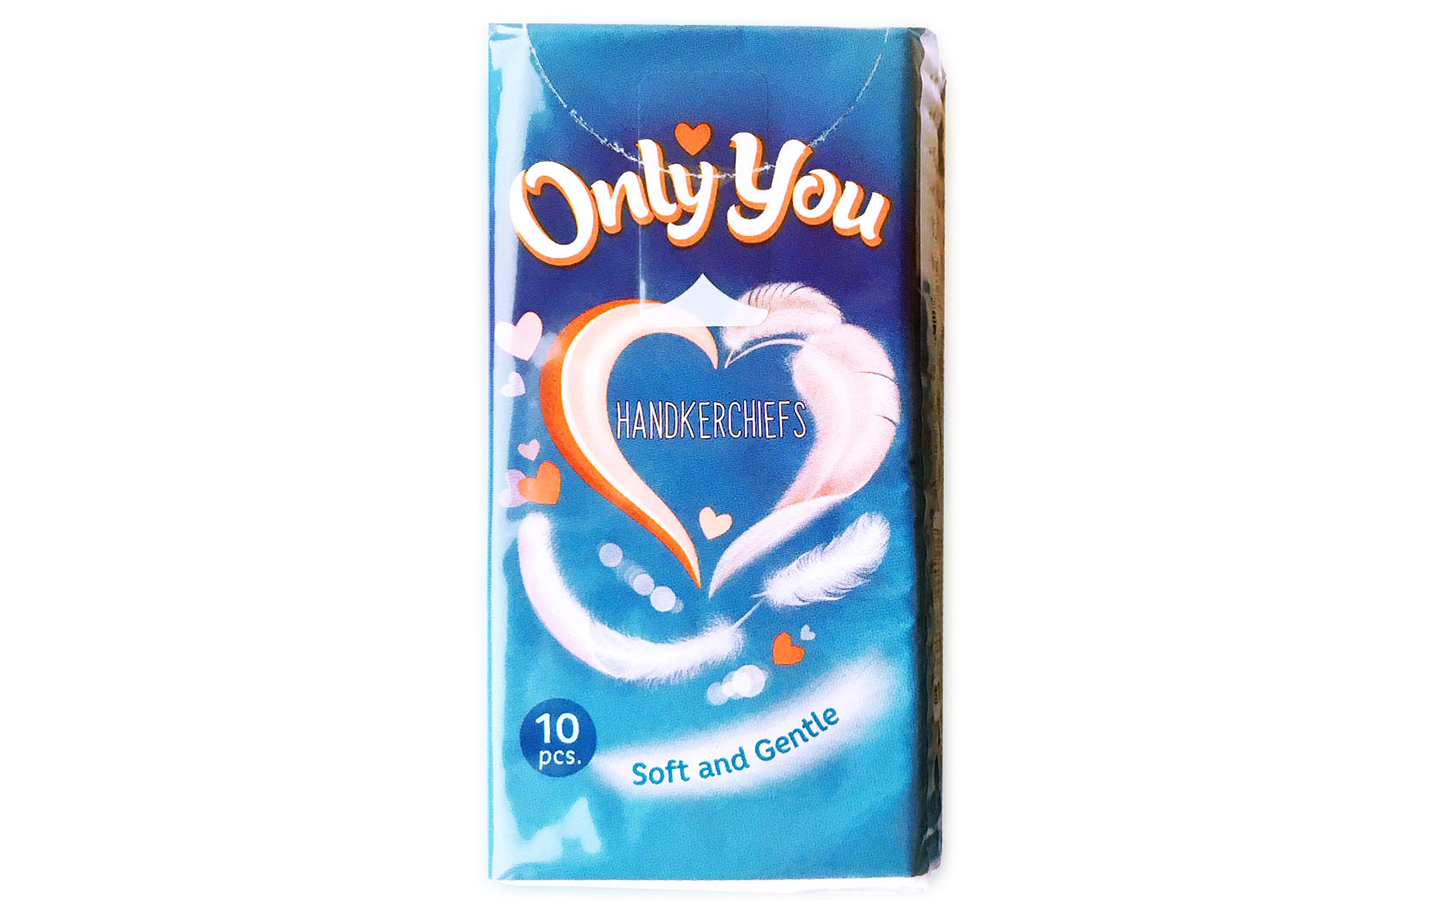 Бумажные платочки "Only You", двухслойные, (10шт)